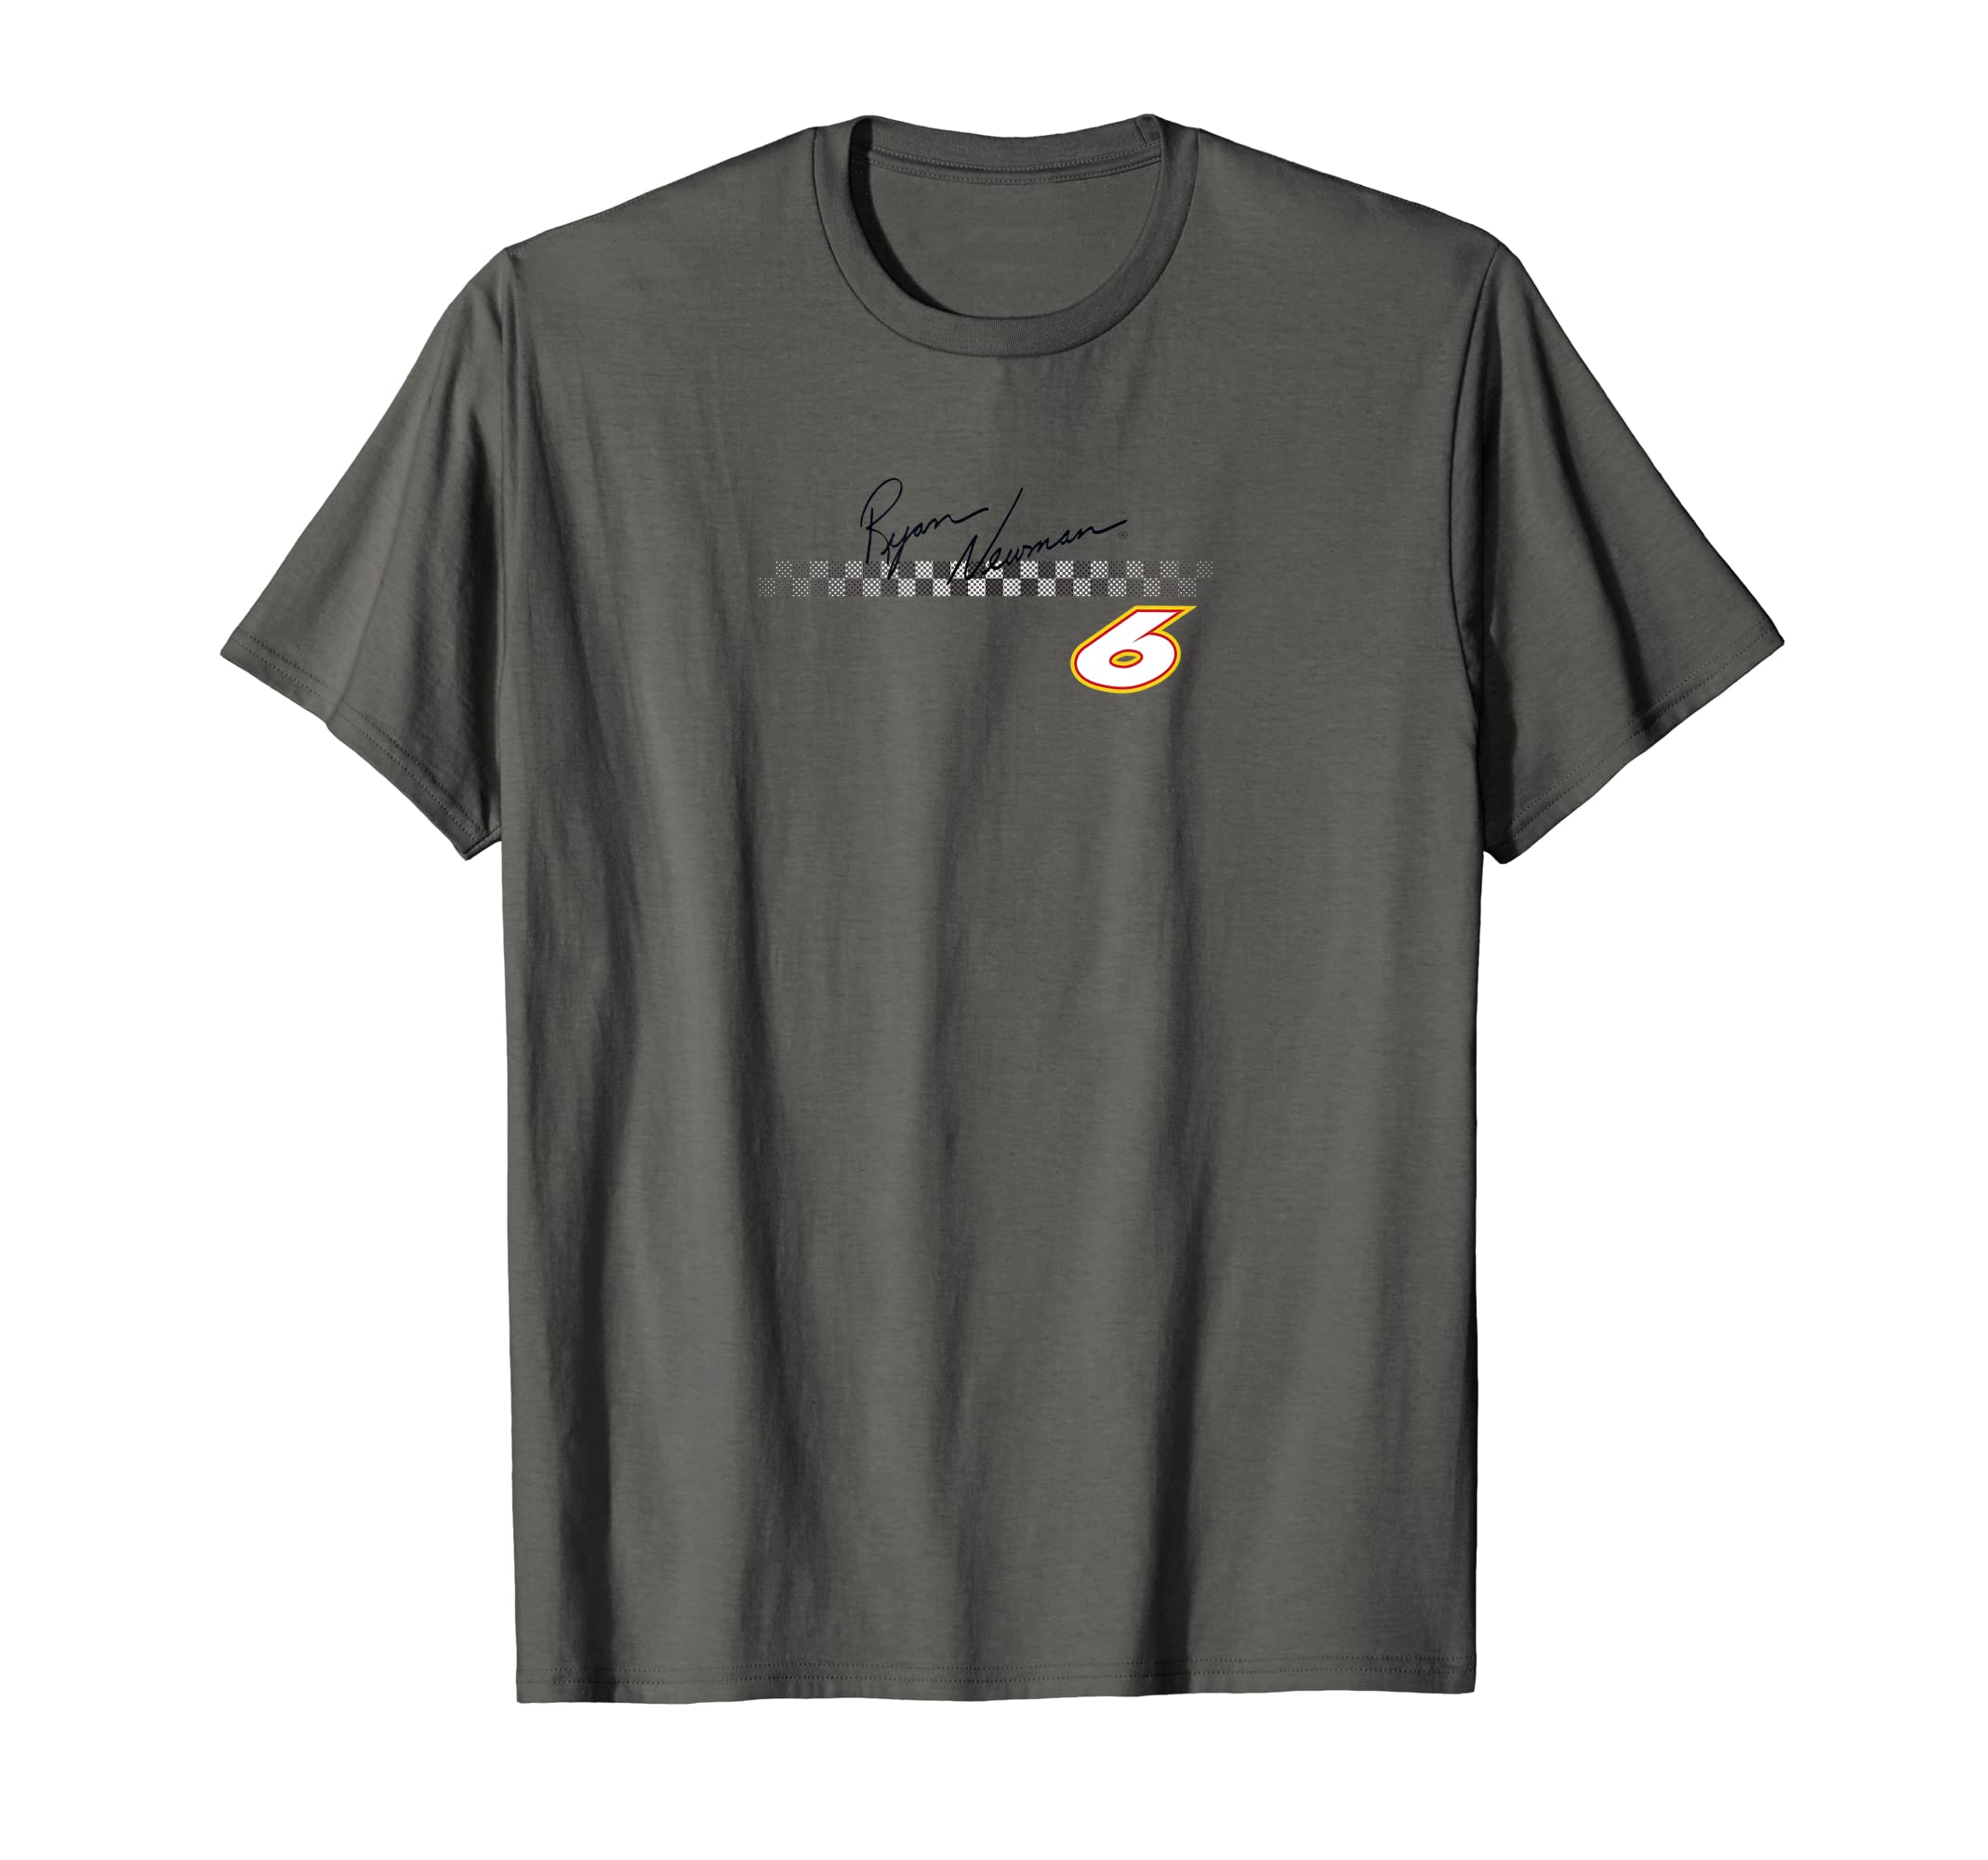 NASCAR - Ryan Newman - Finish Line T-Shirt